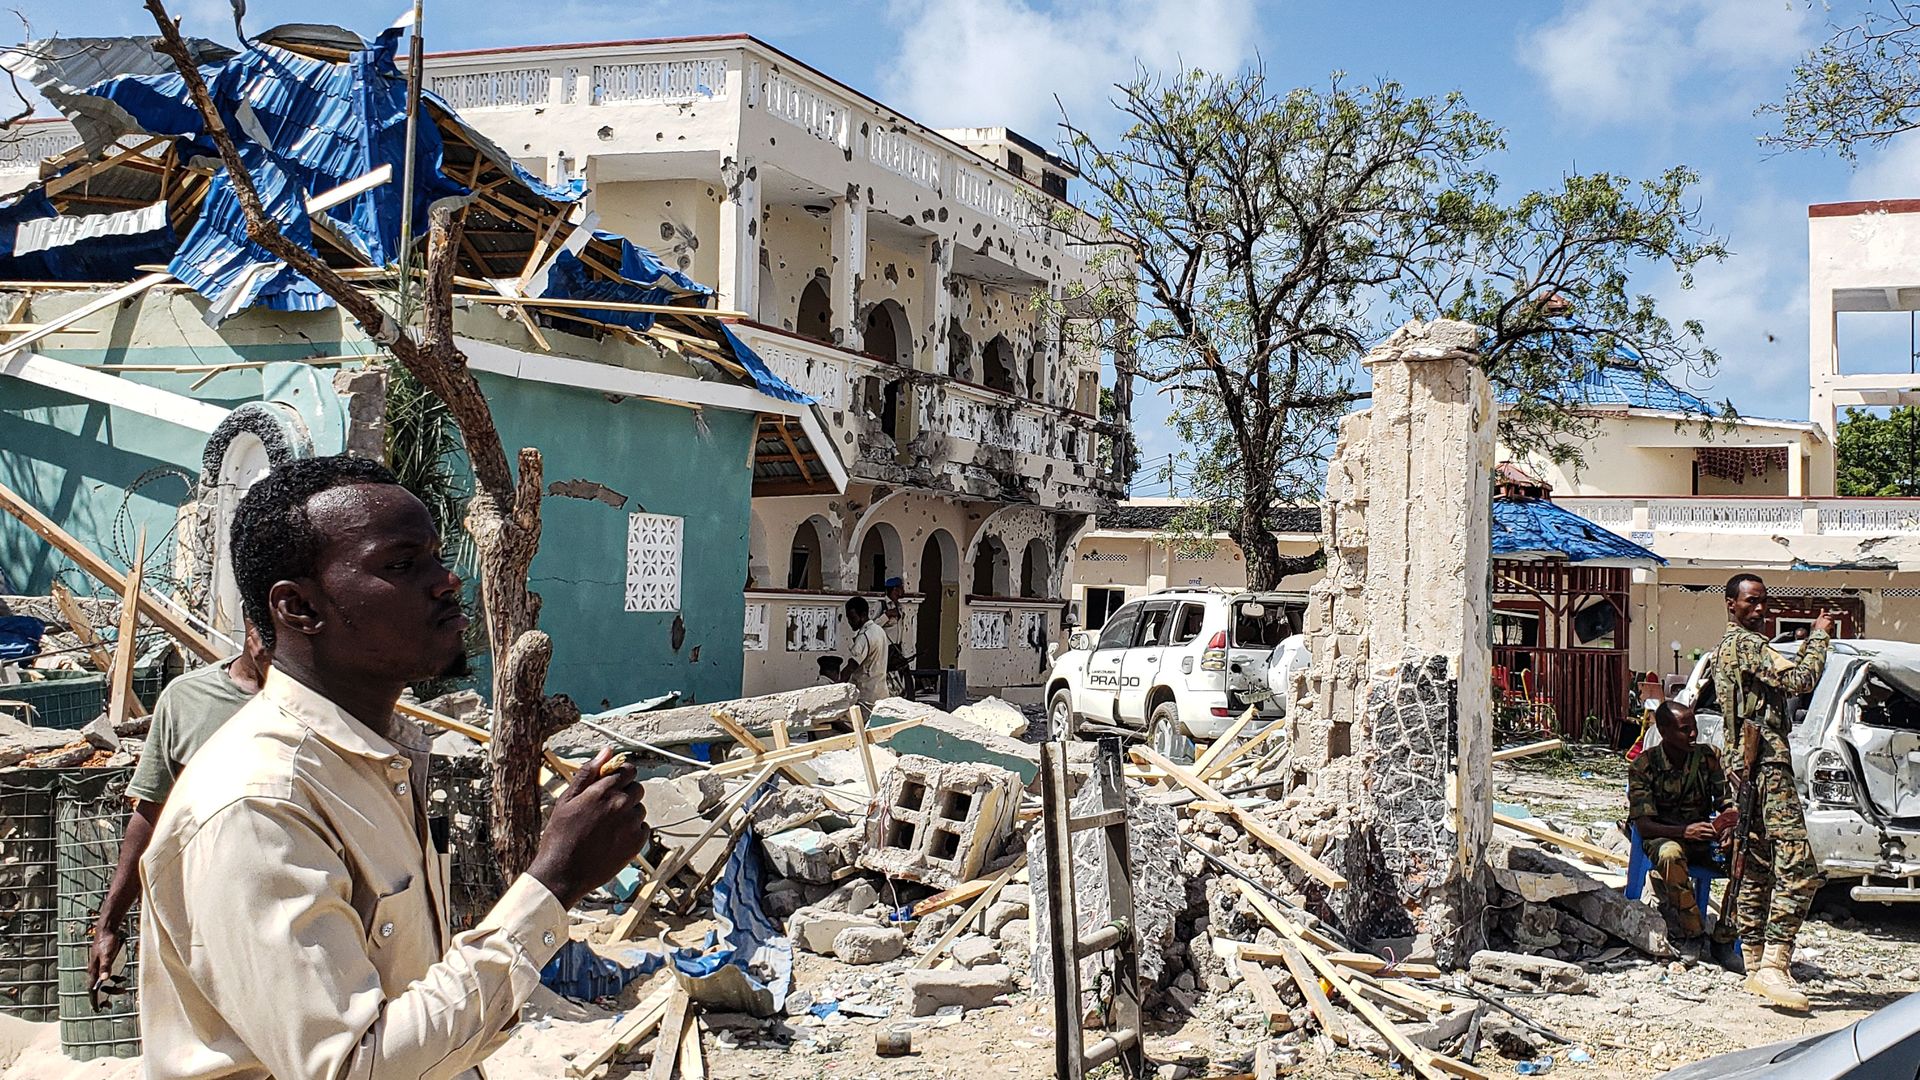 Hotel in Kismayo, Somalia following a terror attack by Al-Shabab